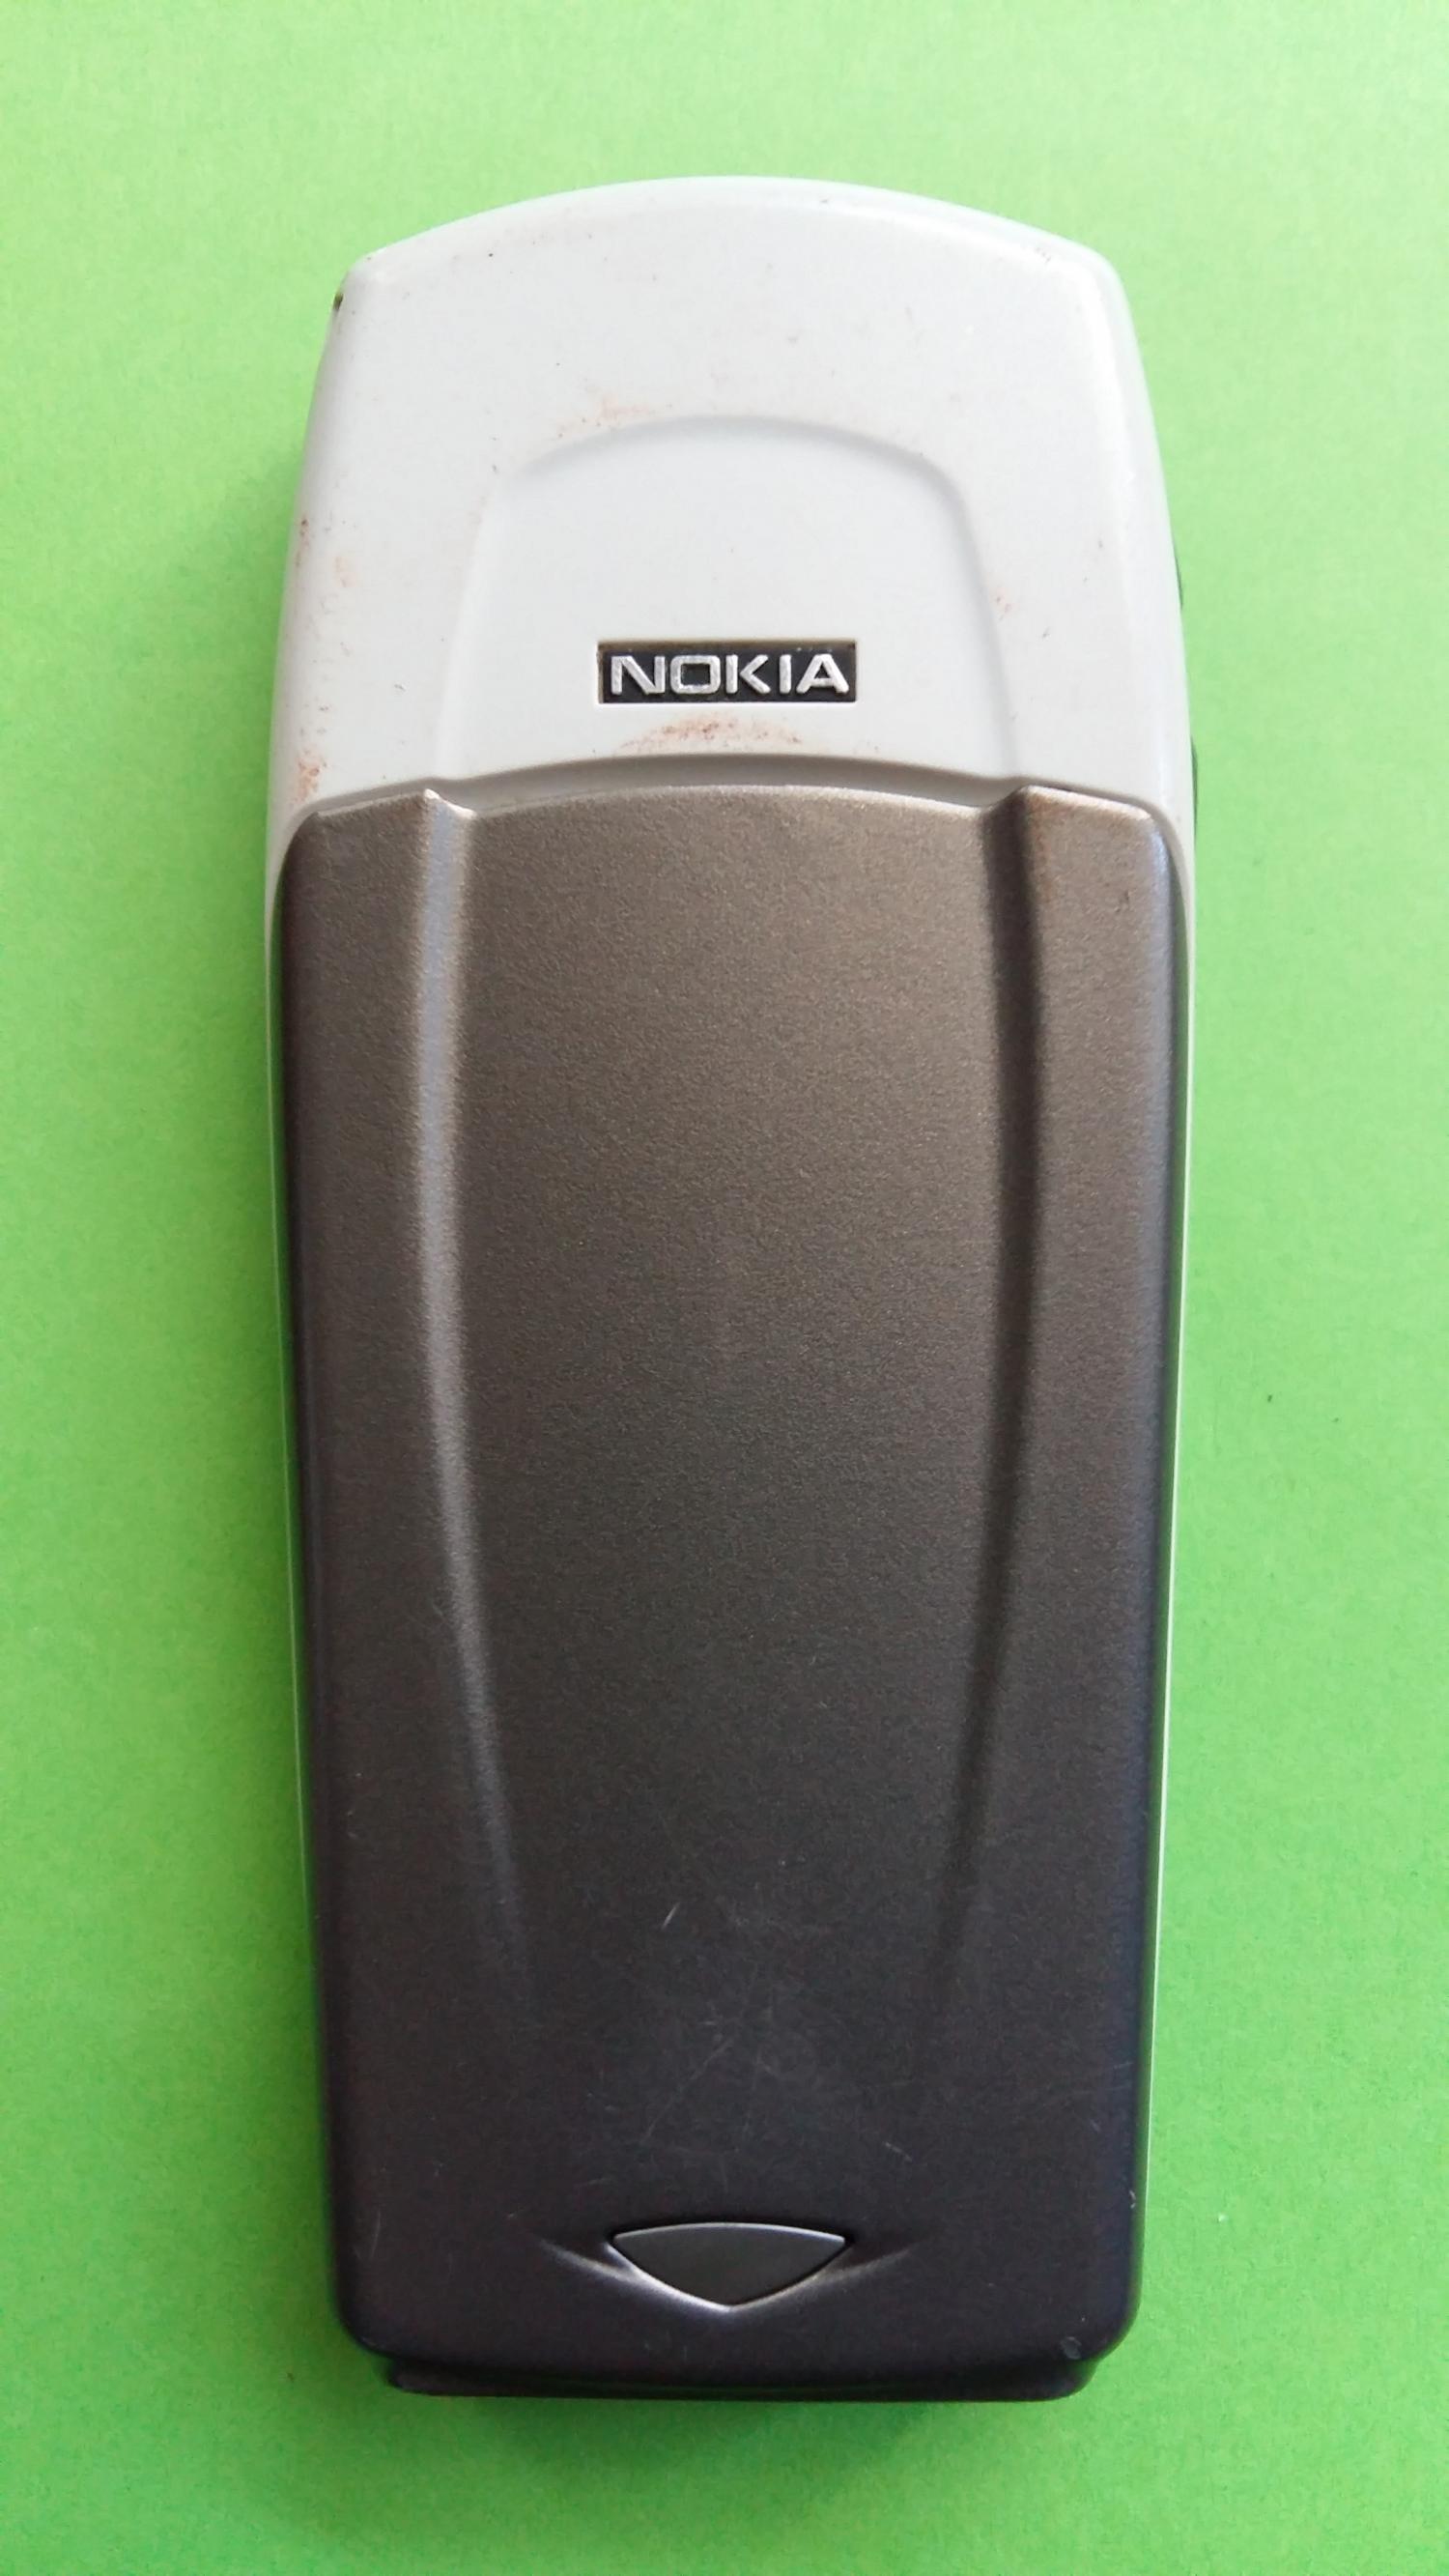 image-7328933-Nokia 6100 (3)2.jpg